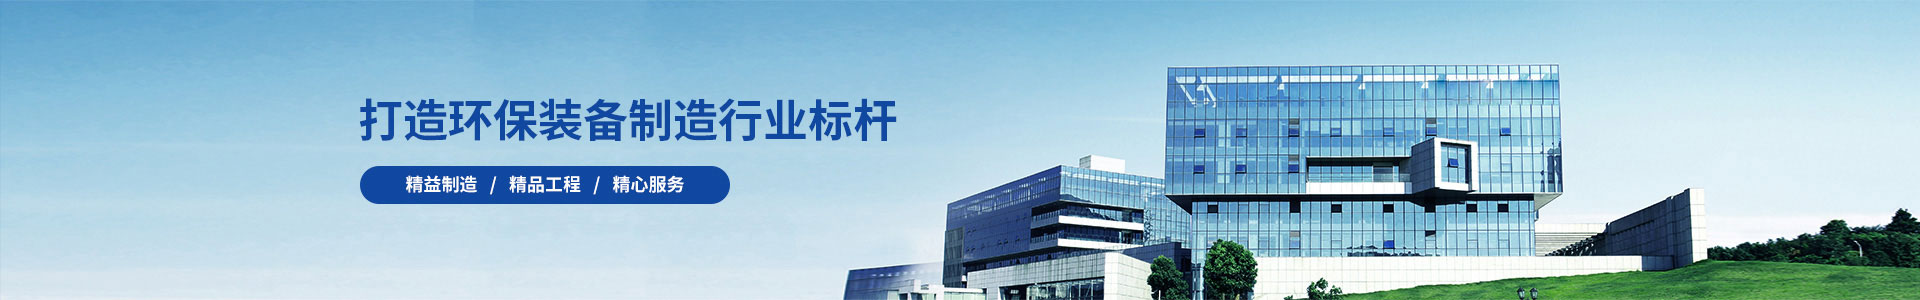 金融加力支持保障性住房等三大工程”-行业新闻-广州锦如广告有限公司